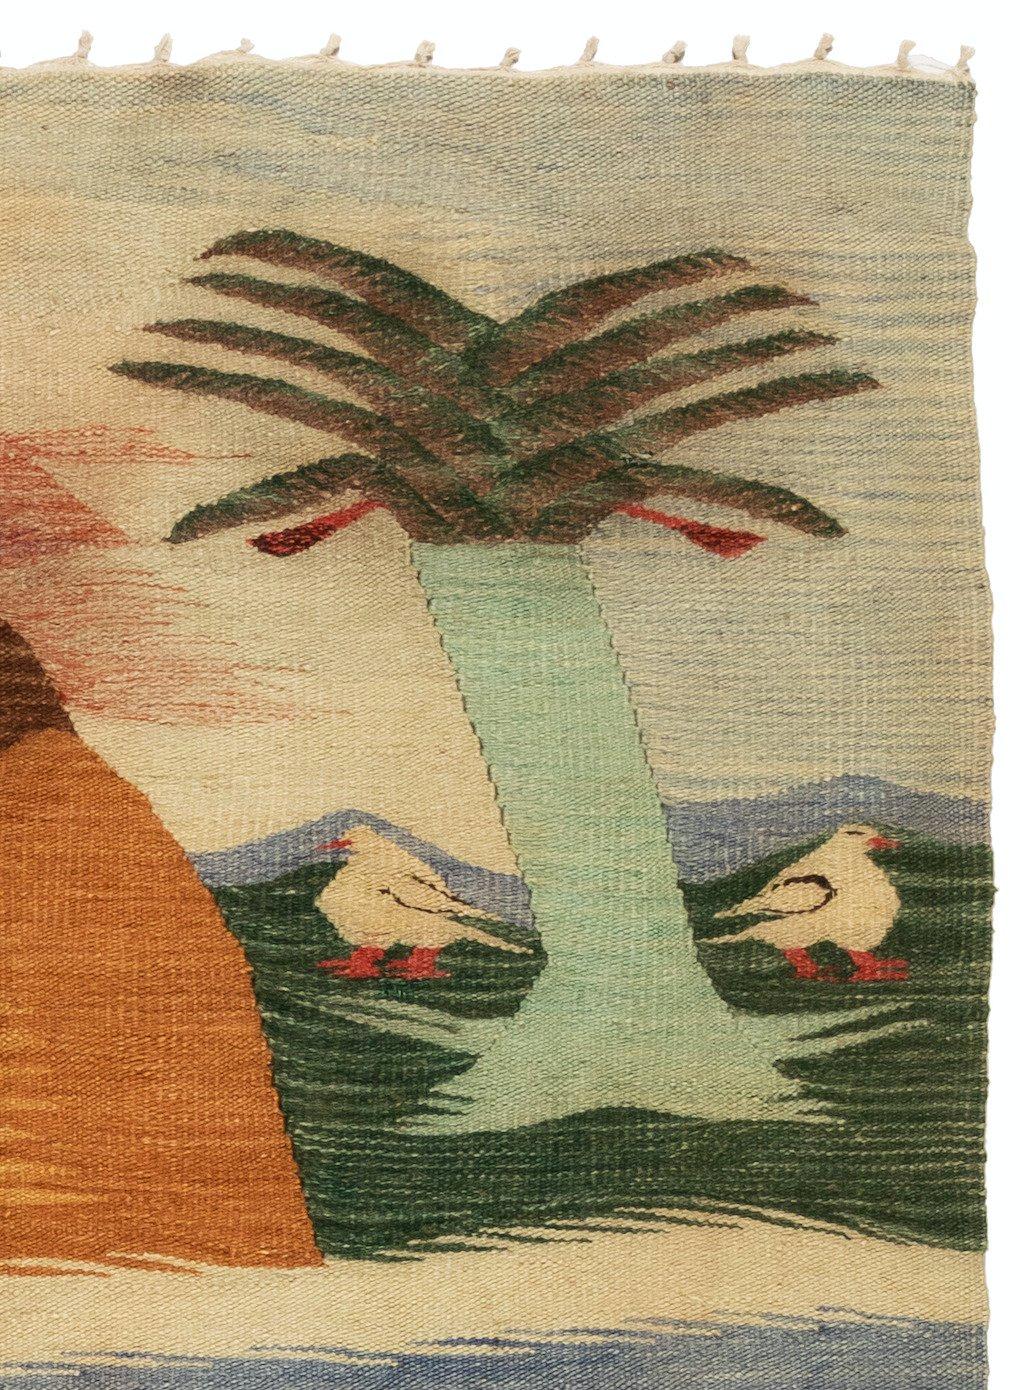 North American Antique Native American Navajo Landscape Weaving Rug with Birds, circa 1930s